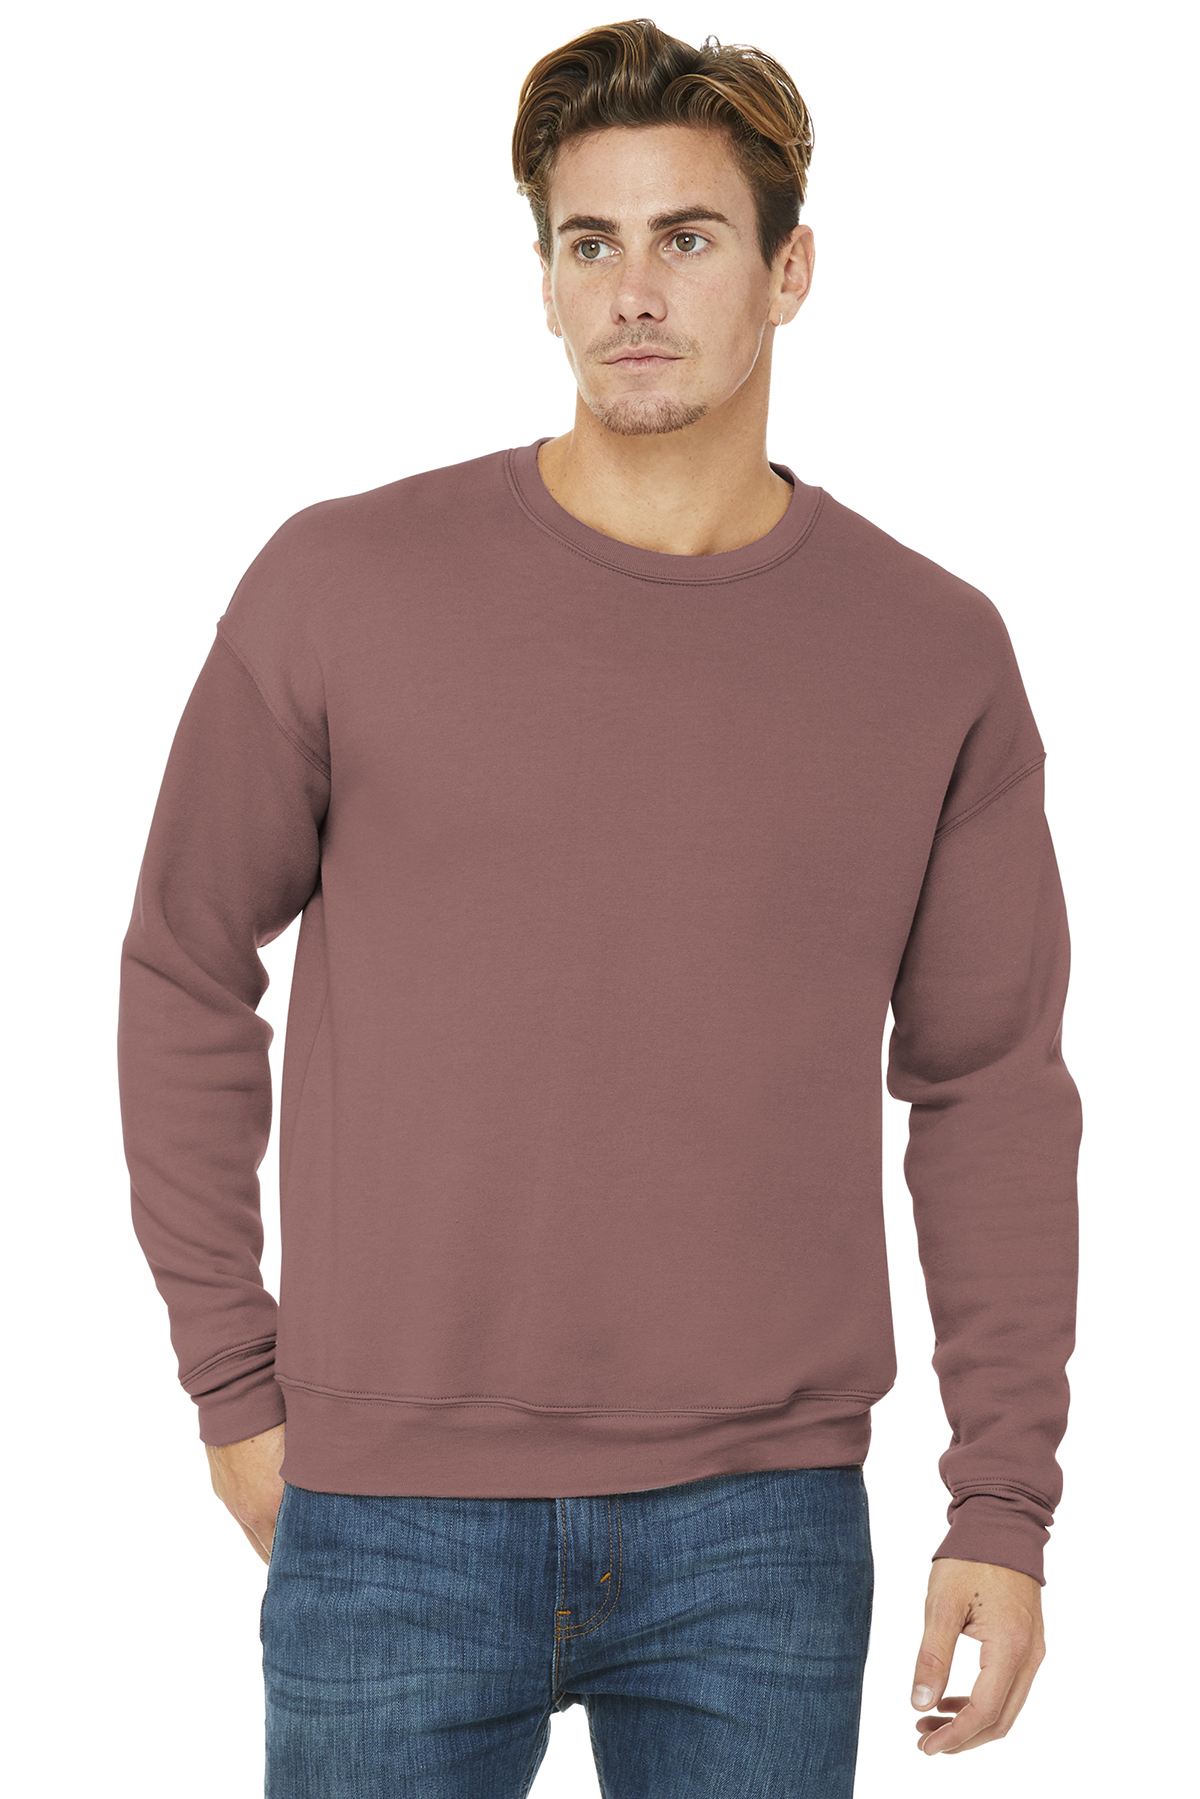 BELLA+CANVAS Unisex Sponge Fleece Drop Shoulder Sweatshirt | Product ...